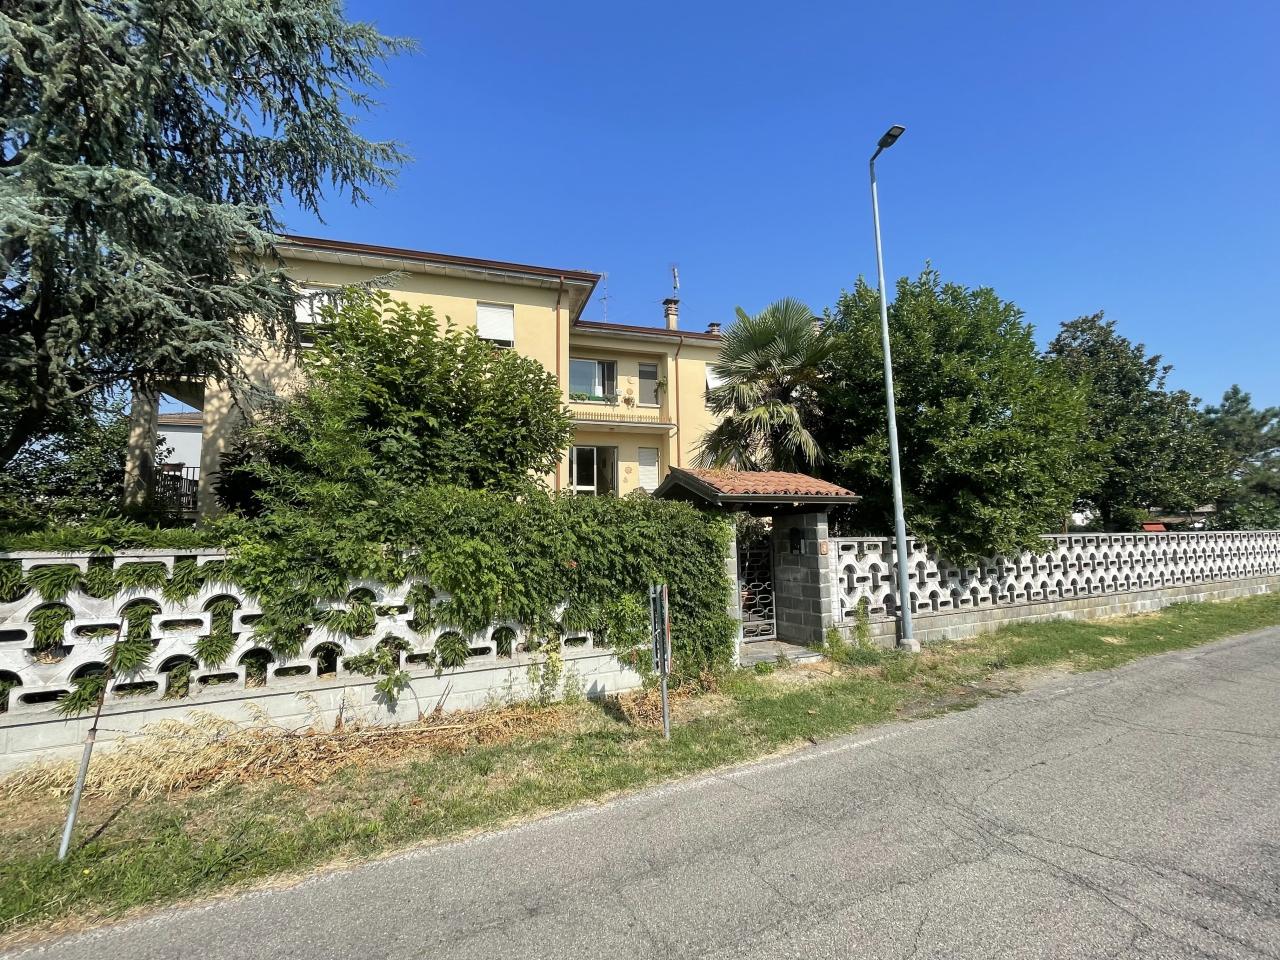 Appartamento in vendita a Polesine Zibello